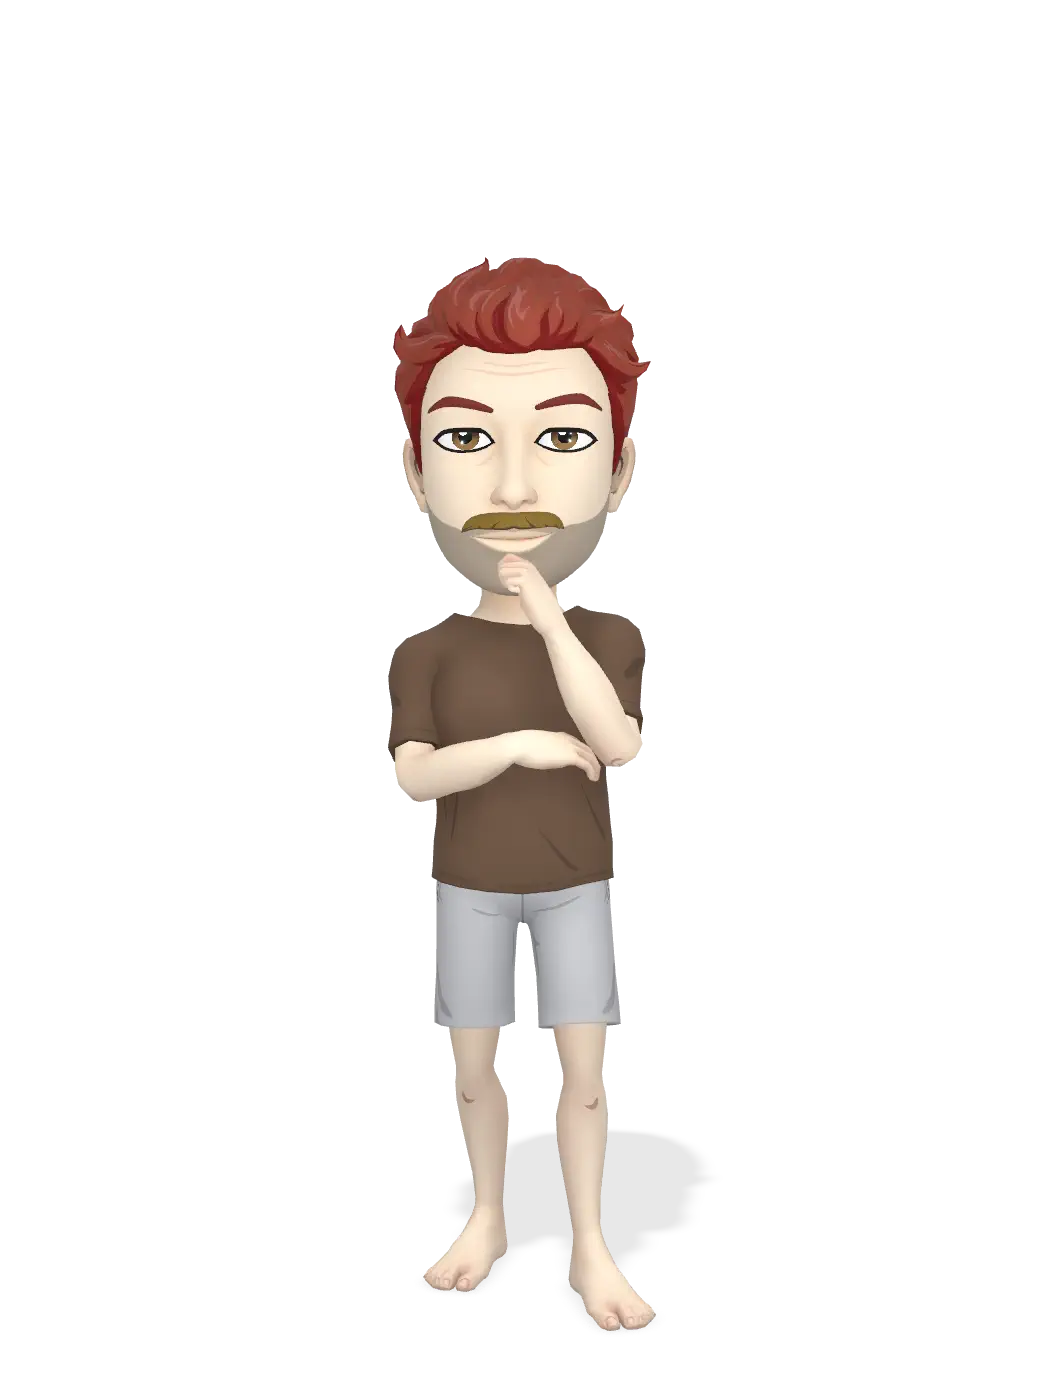 3D Bitmoji for daangijzen avatar